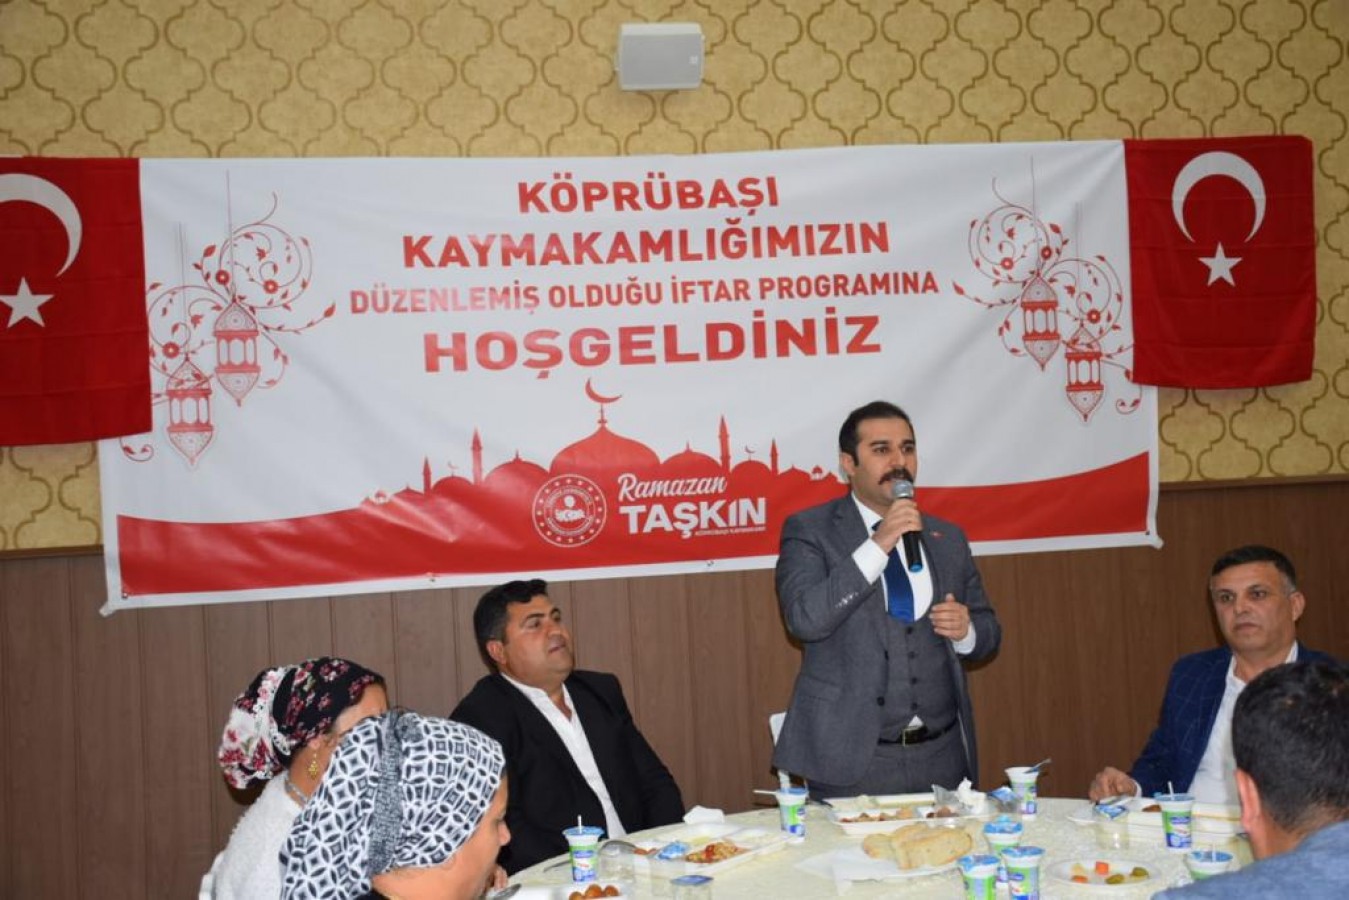 Köprübaşı Kaymakamı Ramazan Taşkın, Romanlarla iftar yaptı: Bizim için vazgeçilmezsiniz!;